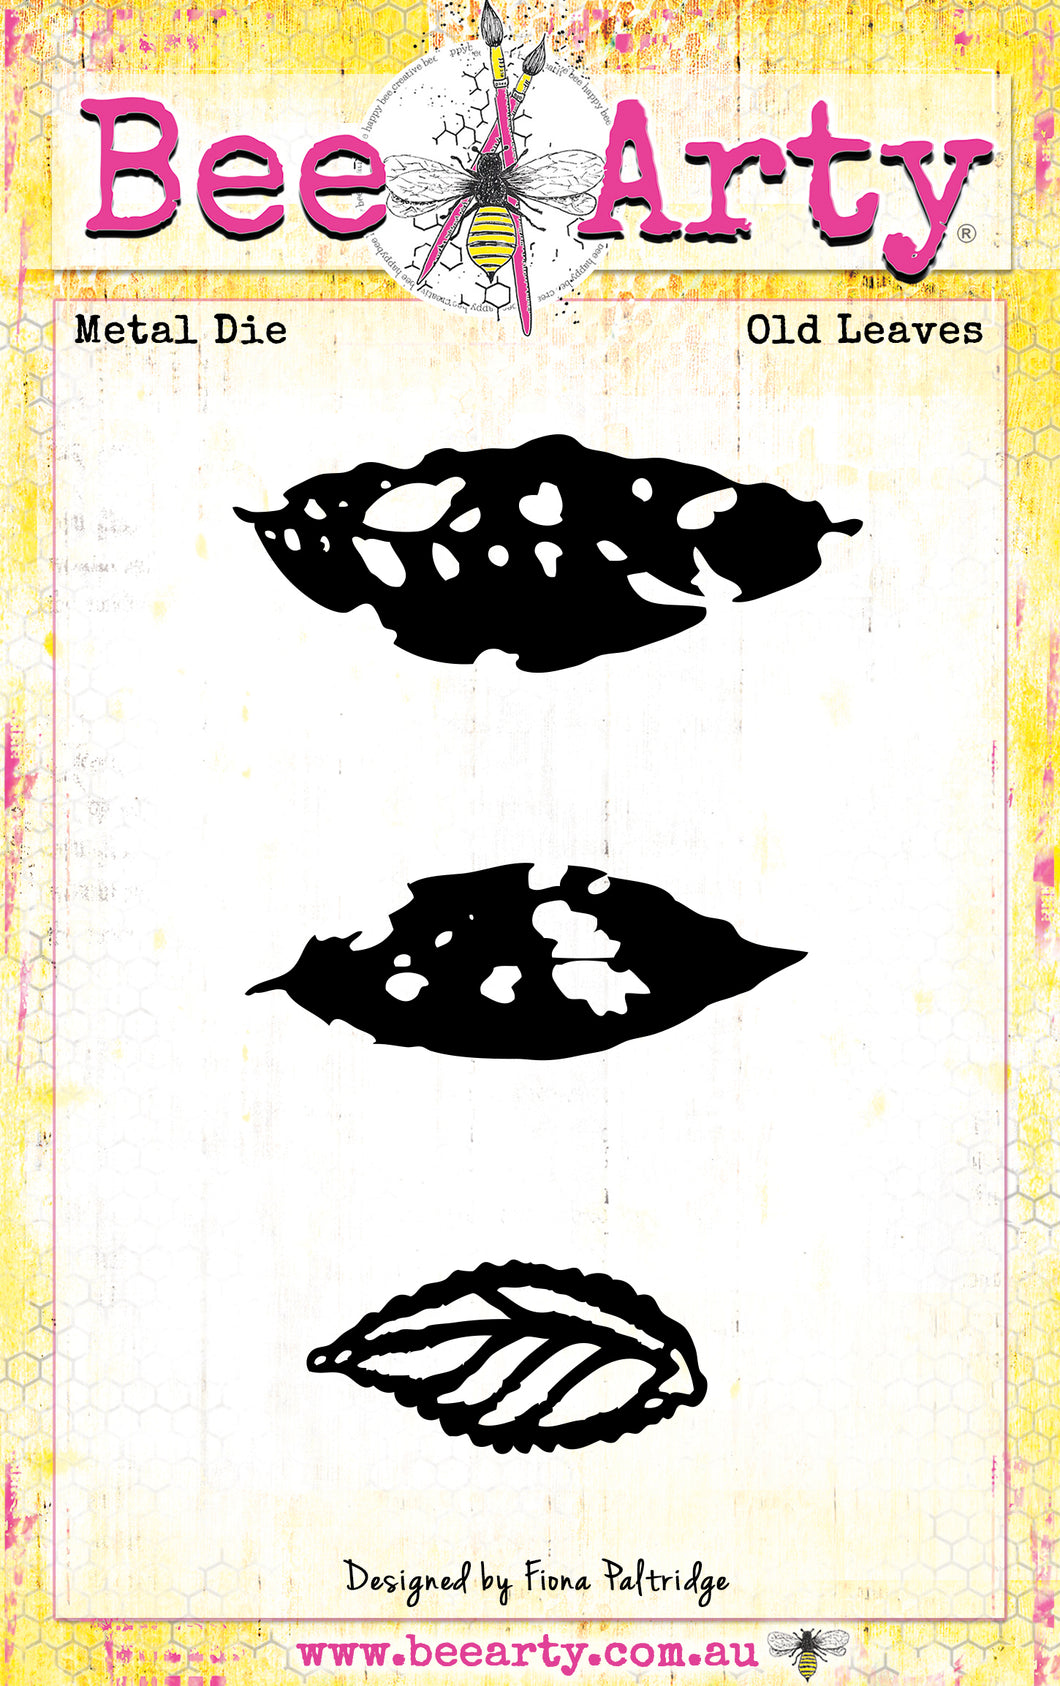 Old Leaves - Metal Die